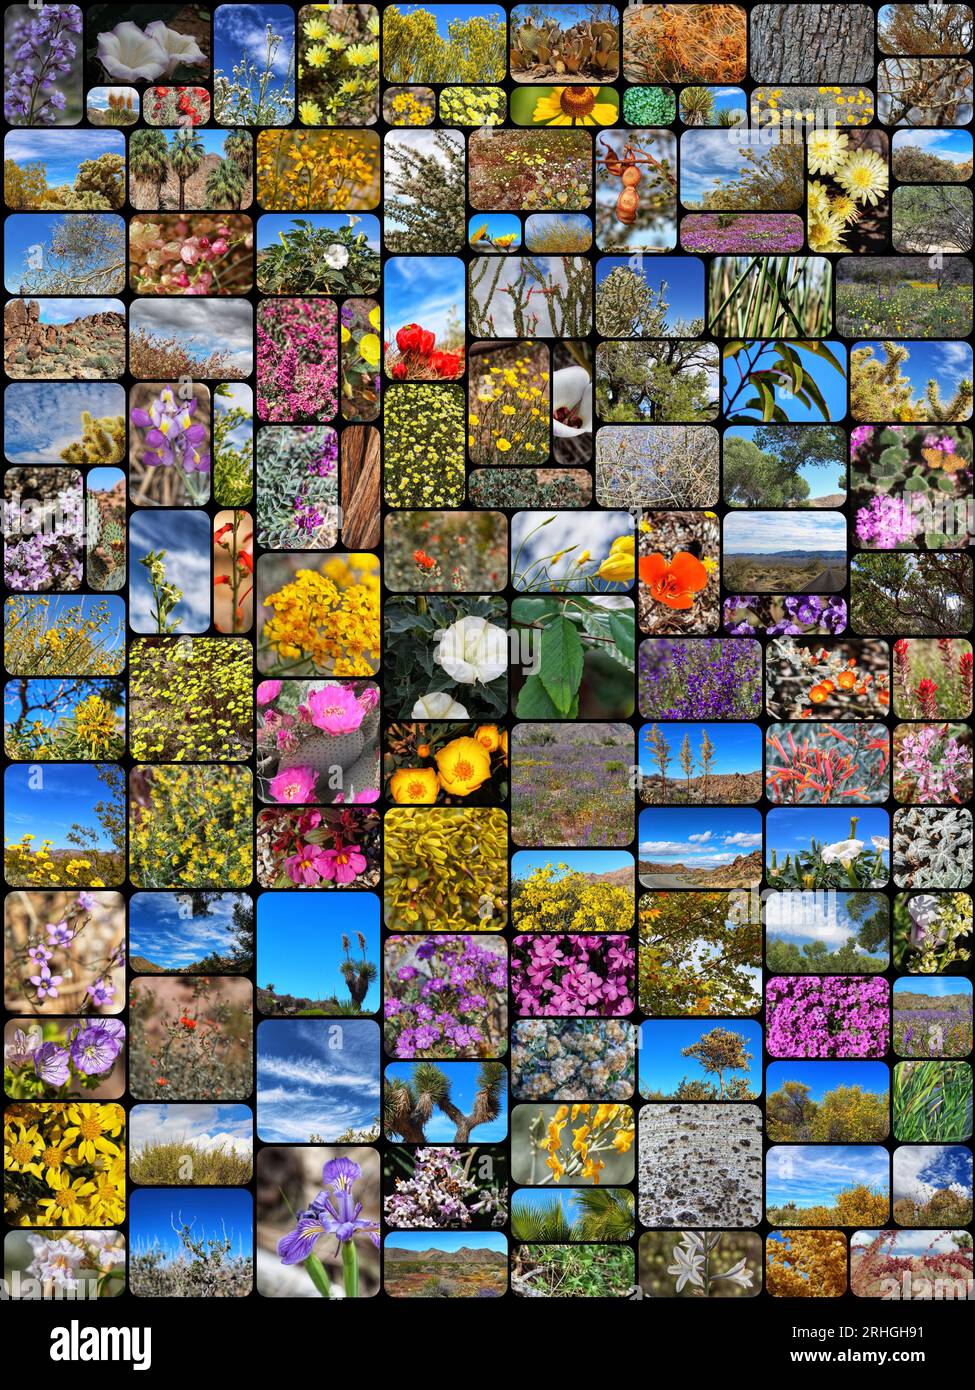 Eine Collage, in der einheimische Pflanzen aus Südkalifornien, die in ihren einheimischen Ökosystemen leben, bewundert werden, Stockfoto